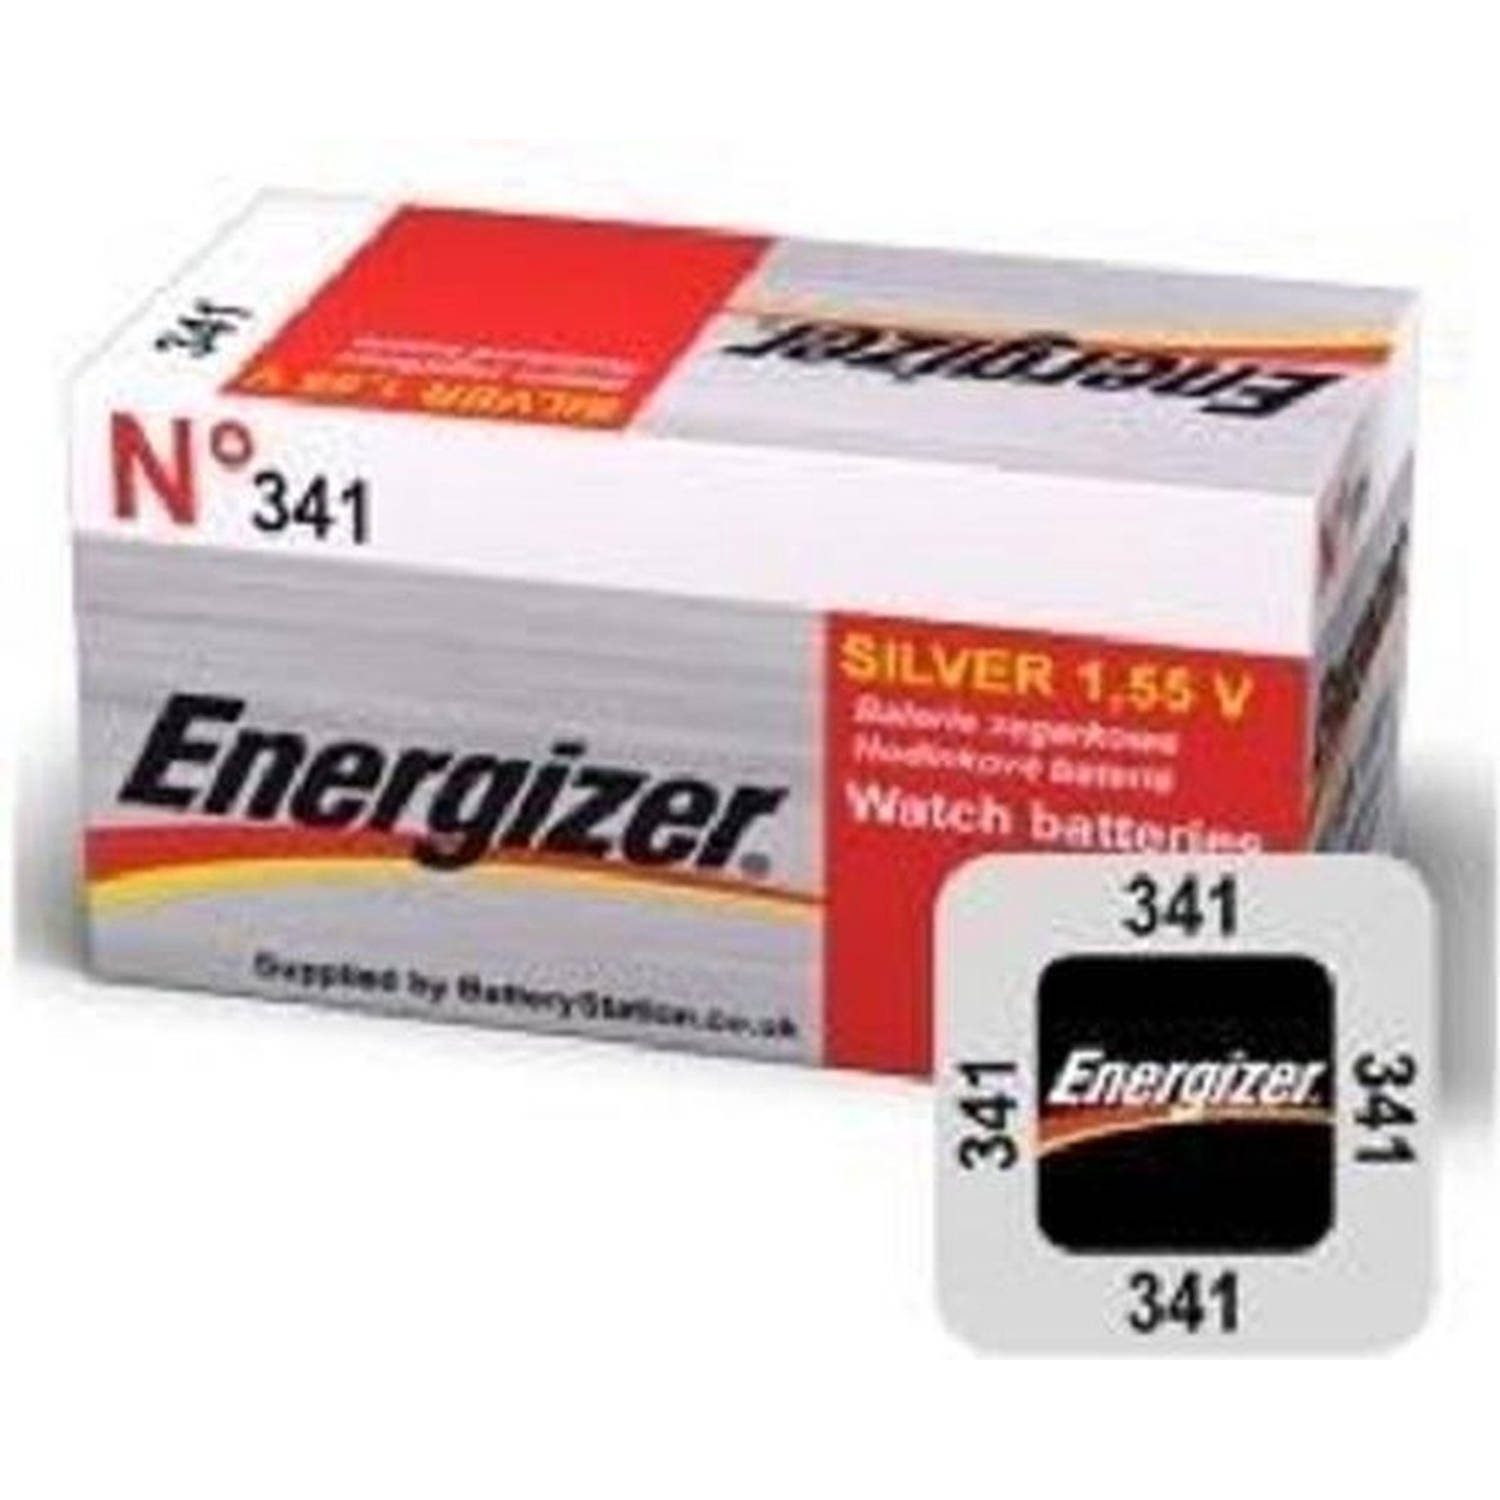 Energizer Zilver Oxide Knoopcel 341 Ld 1.55v